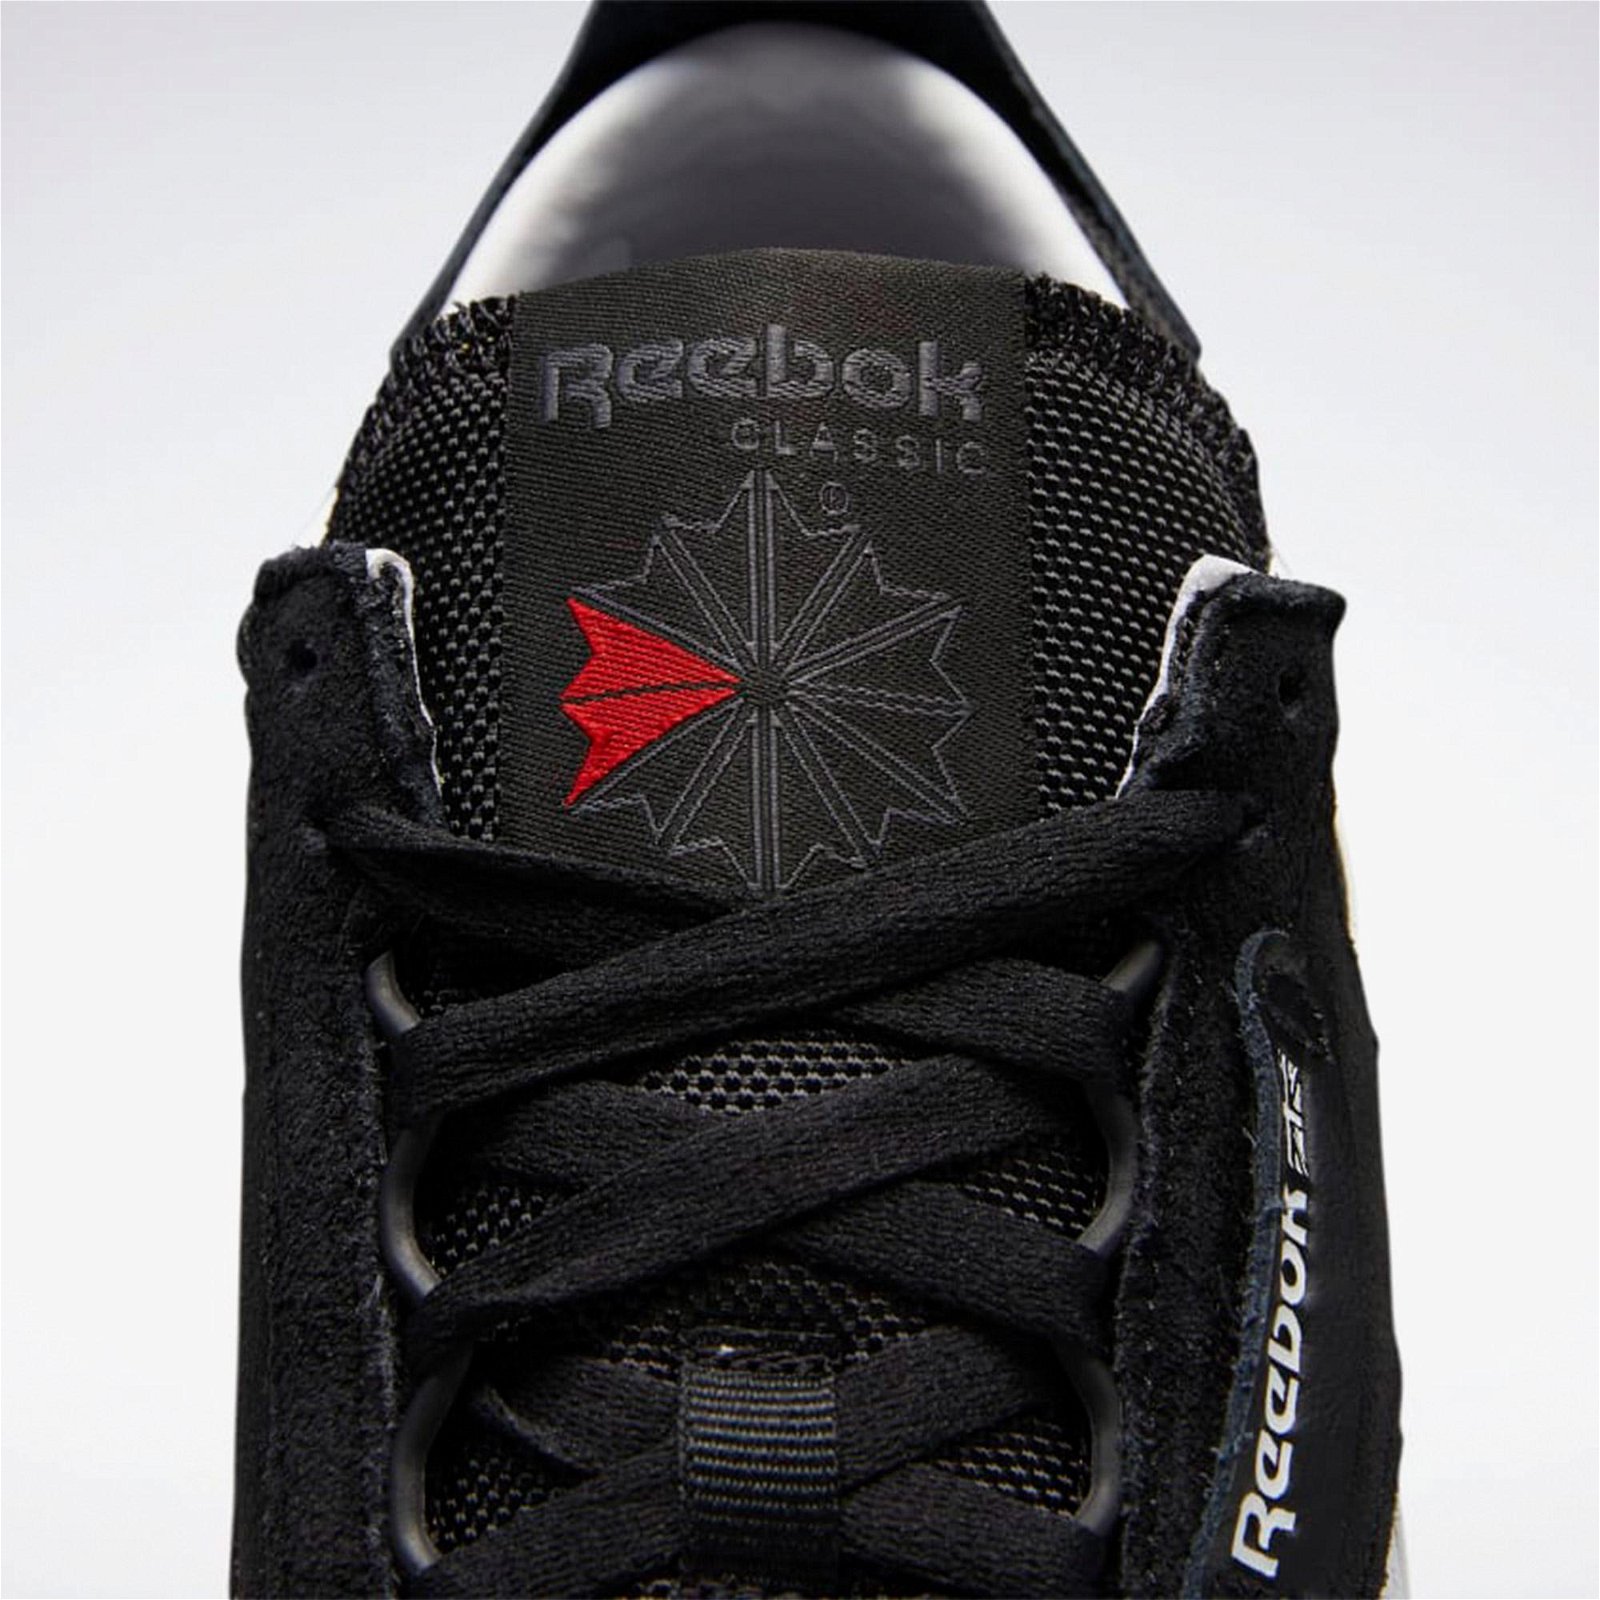 Reebok Classic Leather Legacy Unisex Siyah Spor Ayakkabı